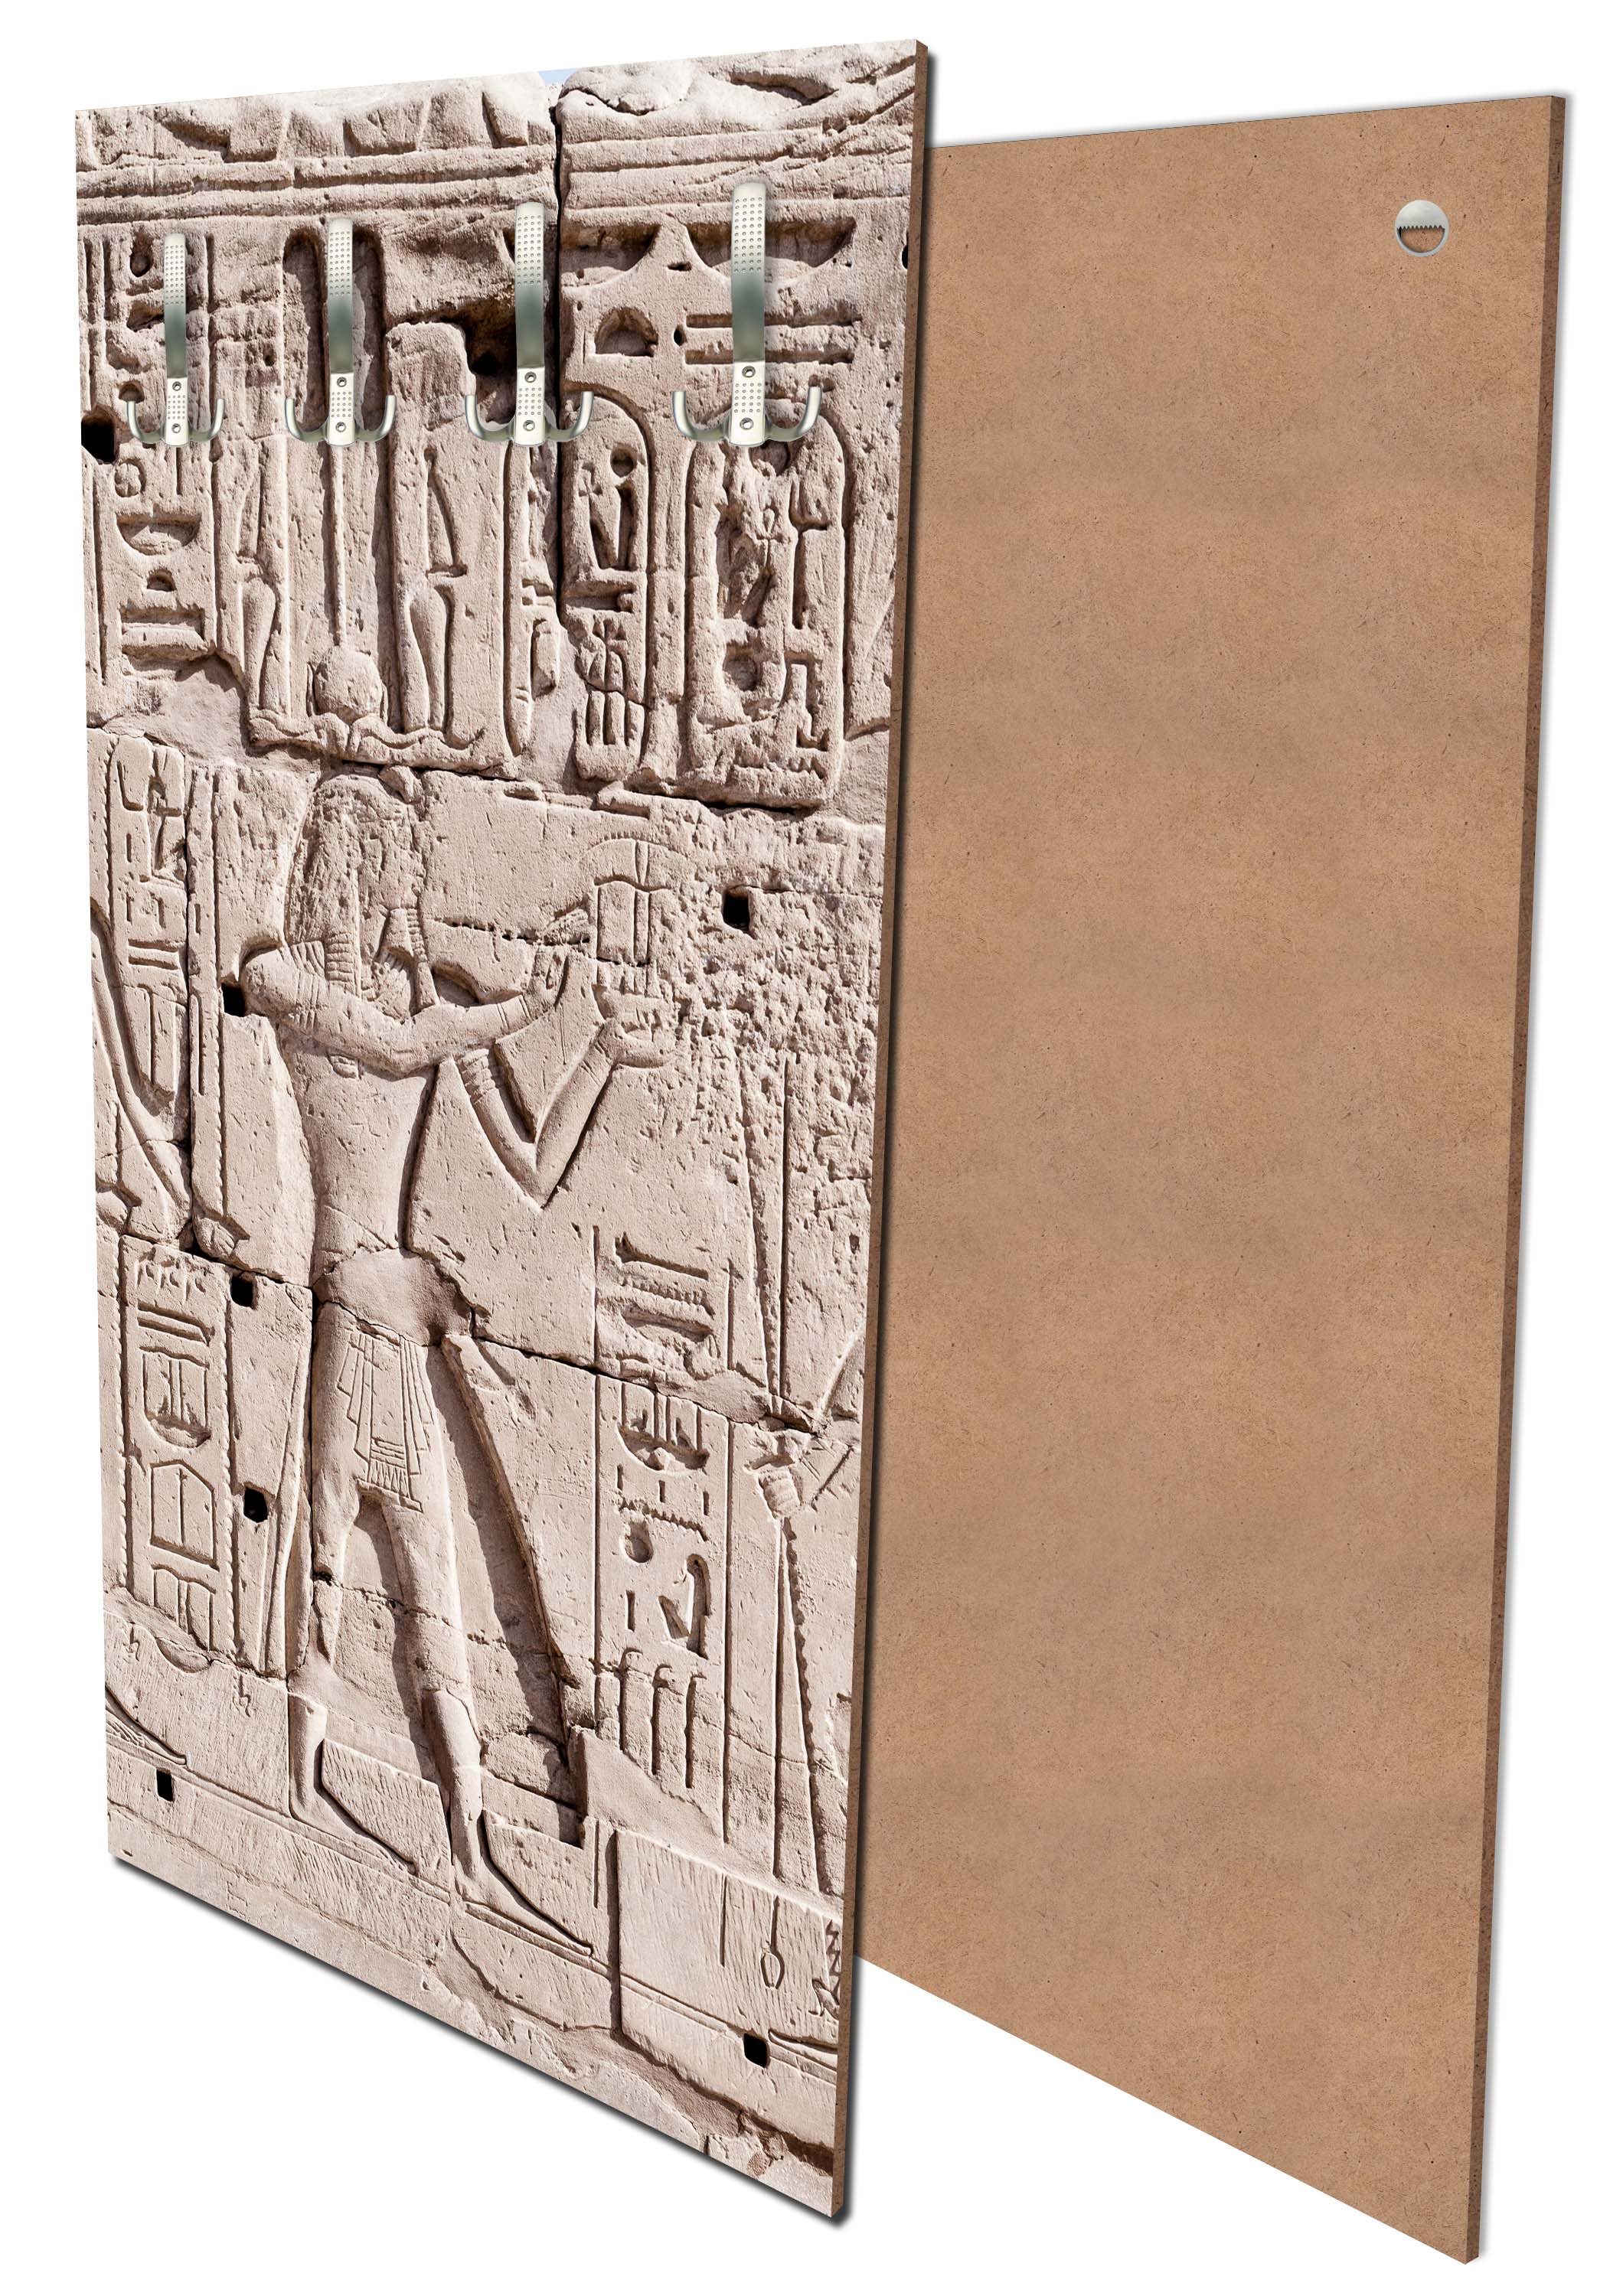 Garderobe Hieroglyphenschnitzereien an der Wand M0817 entdecken - Bild 1